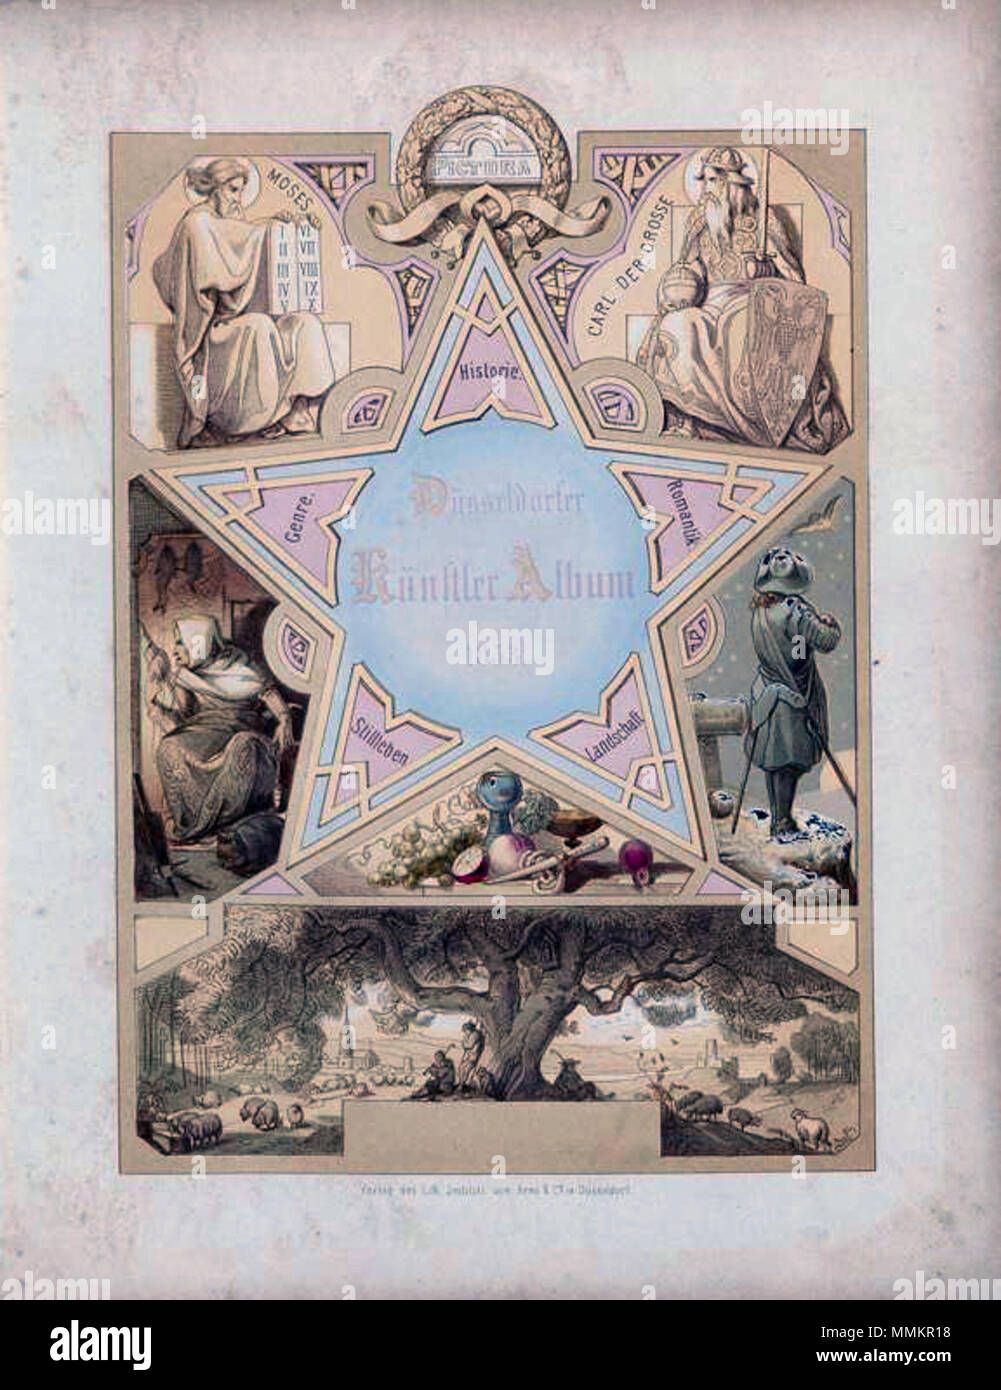 Düsseldorfer Künstler-Album, 1853, Titelblatt illustriert von Caspar Scheuren Foto Stock